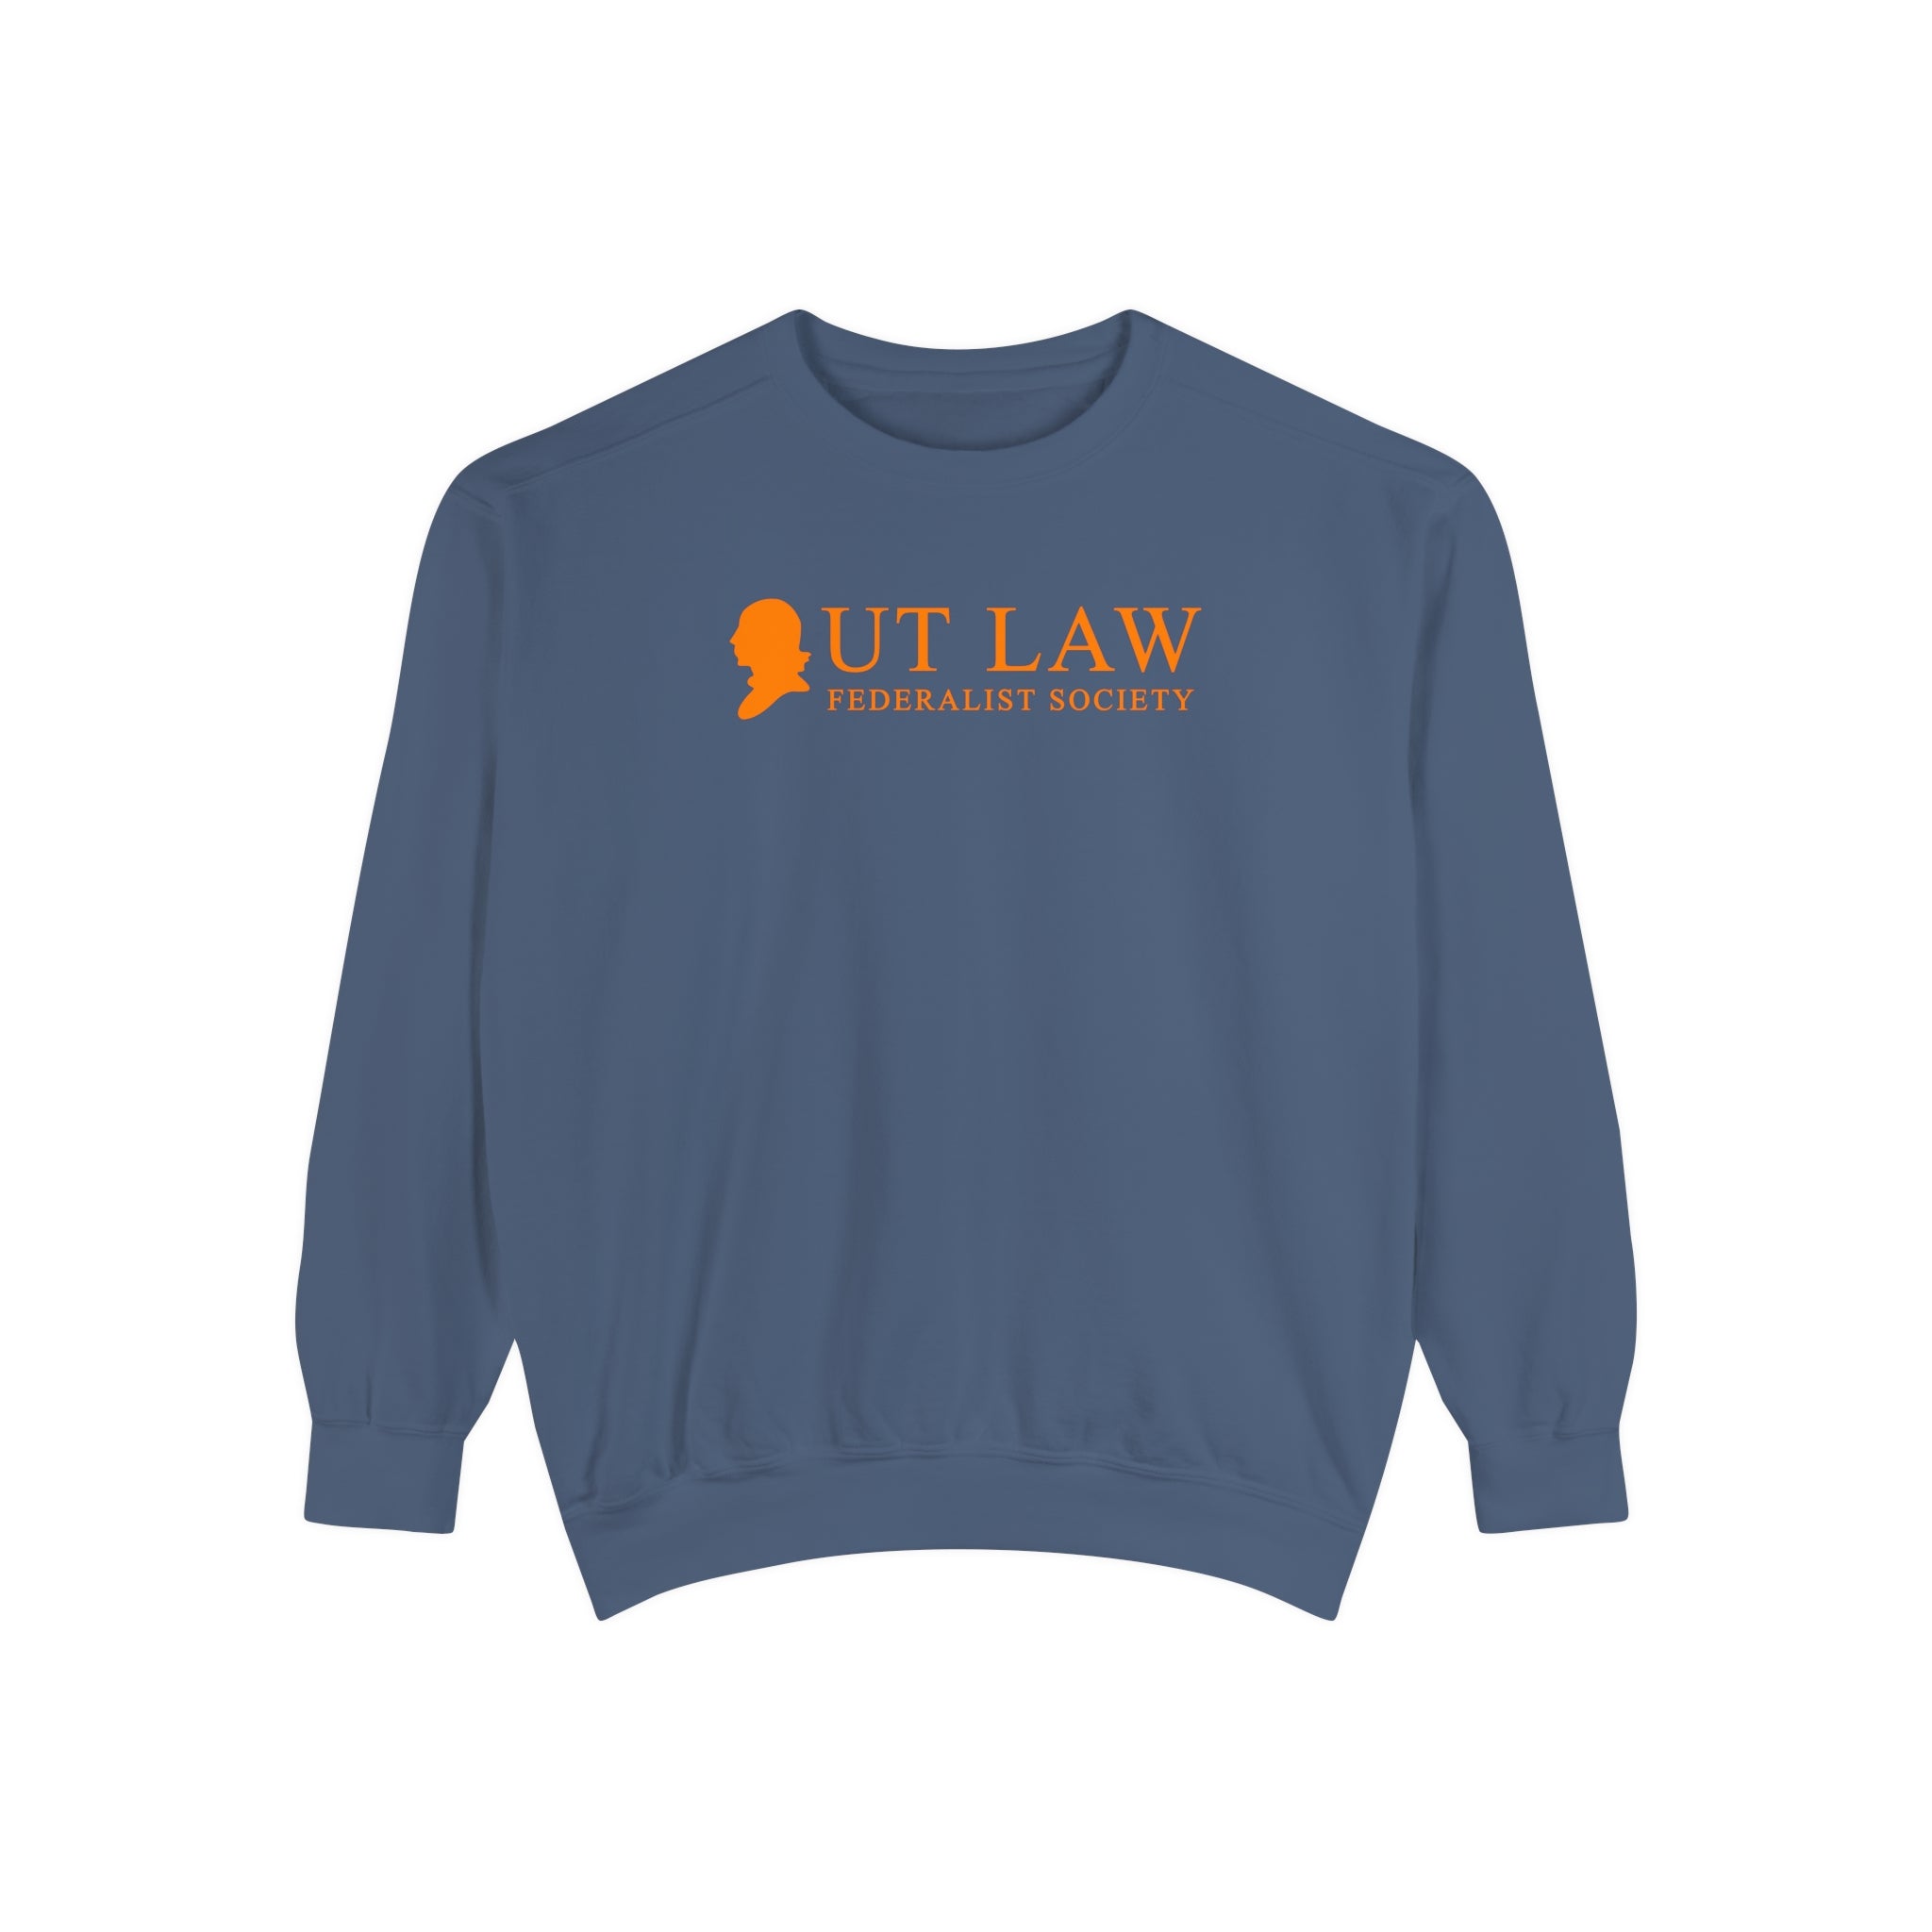 Comfort Colors Sweatshirt, Orange (Tennessee Fed Soc)